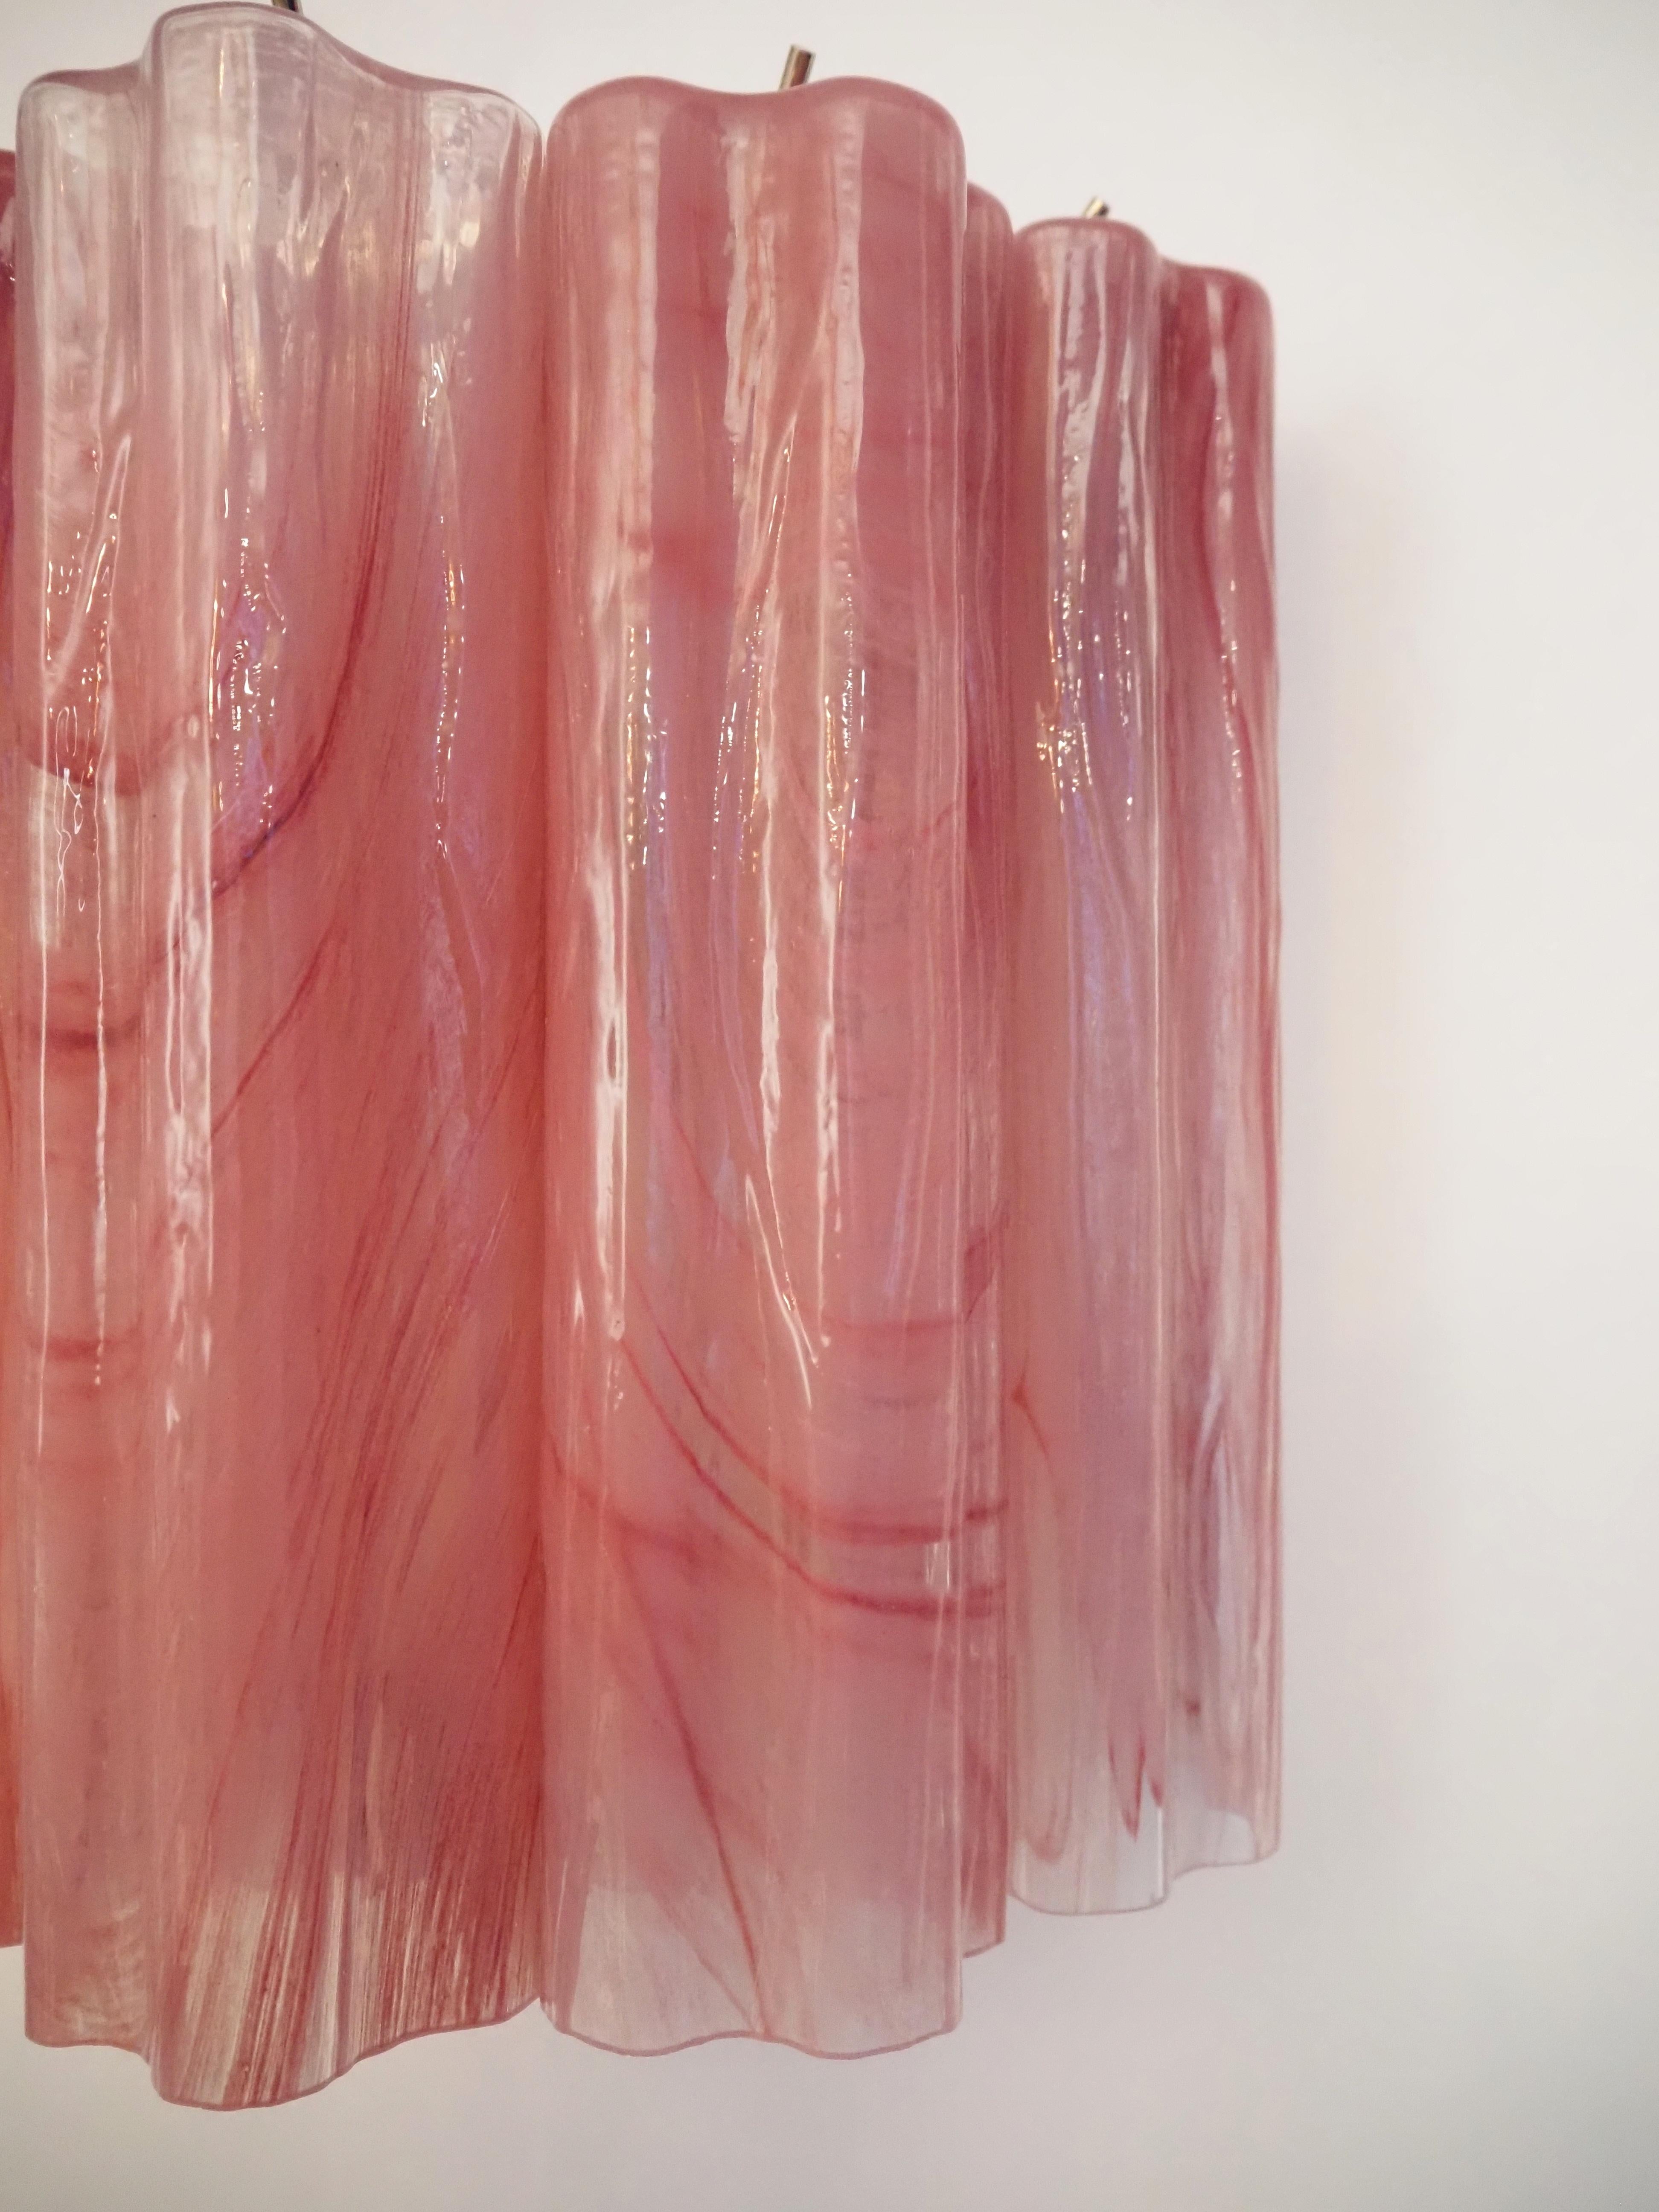 Fantastique paire d'appliques murales tubes en verre de Murano - 5 tubes en verre albâtre rose 8